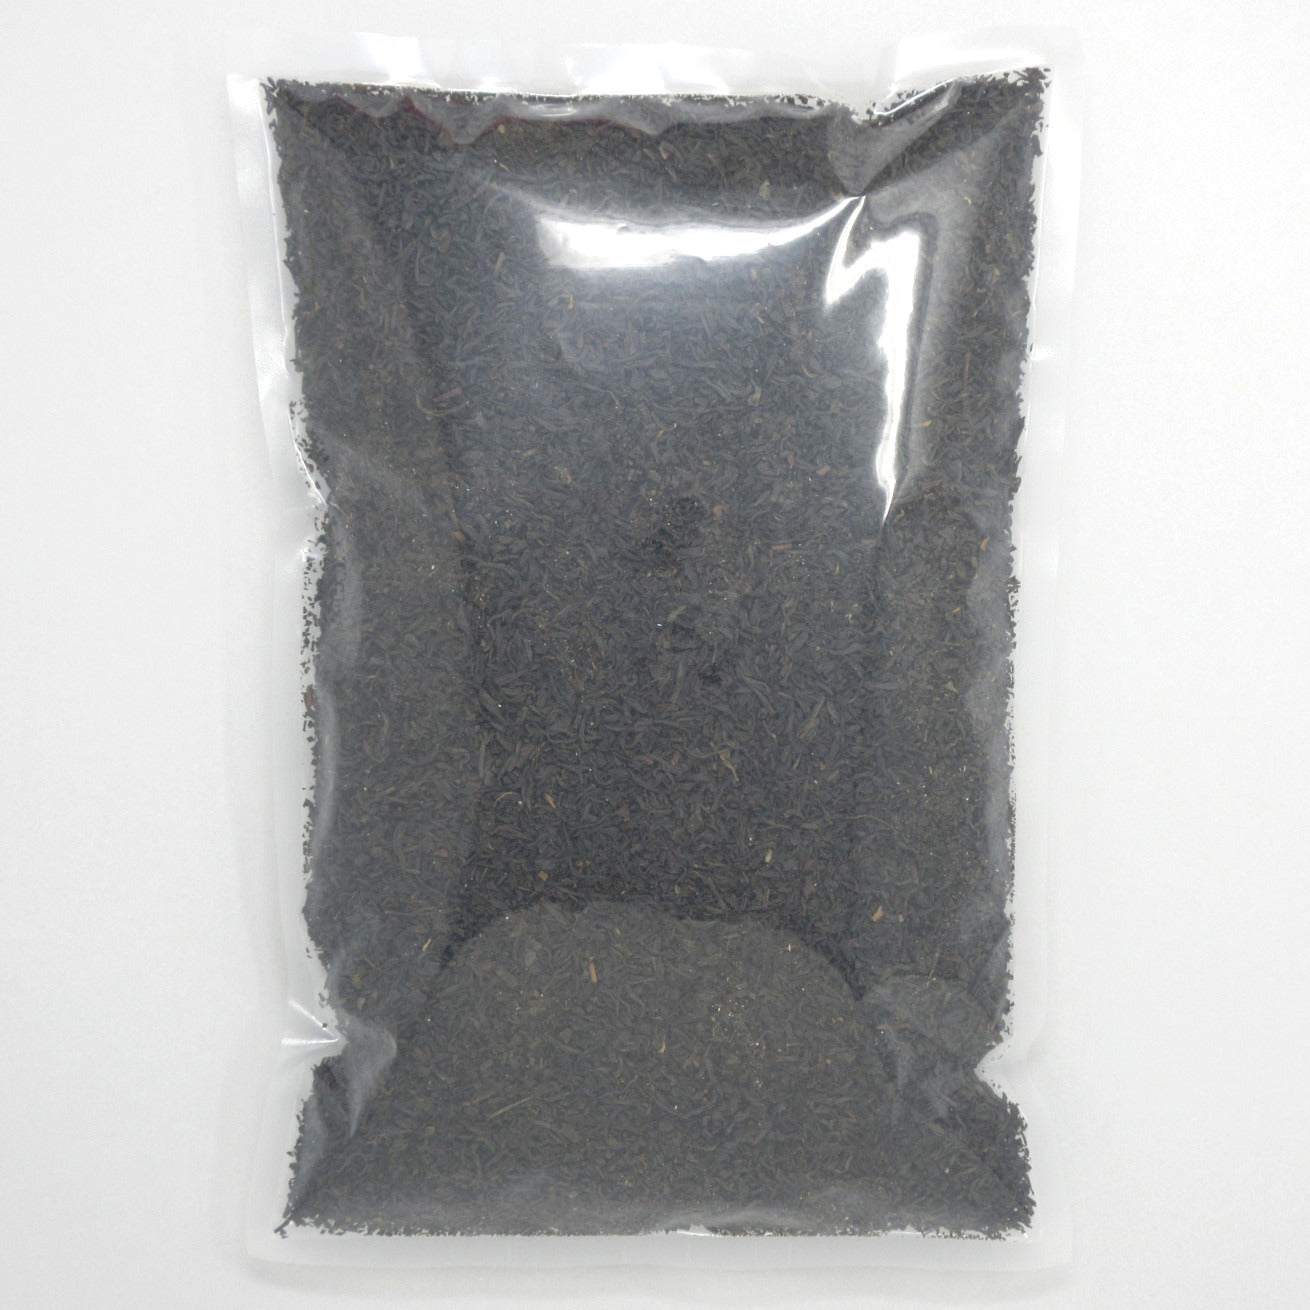 Flour Barrel product image - Orange Pekoe Leaf Tea